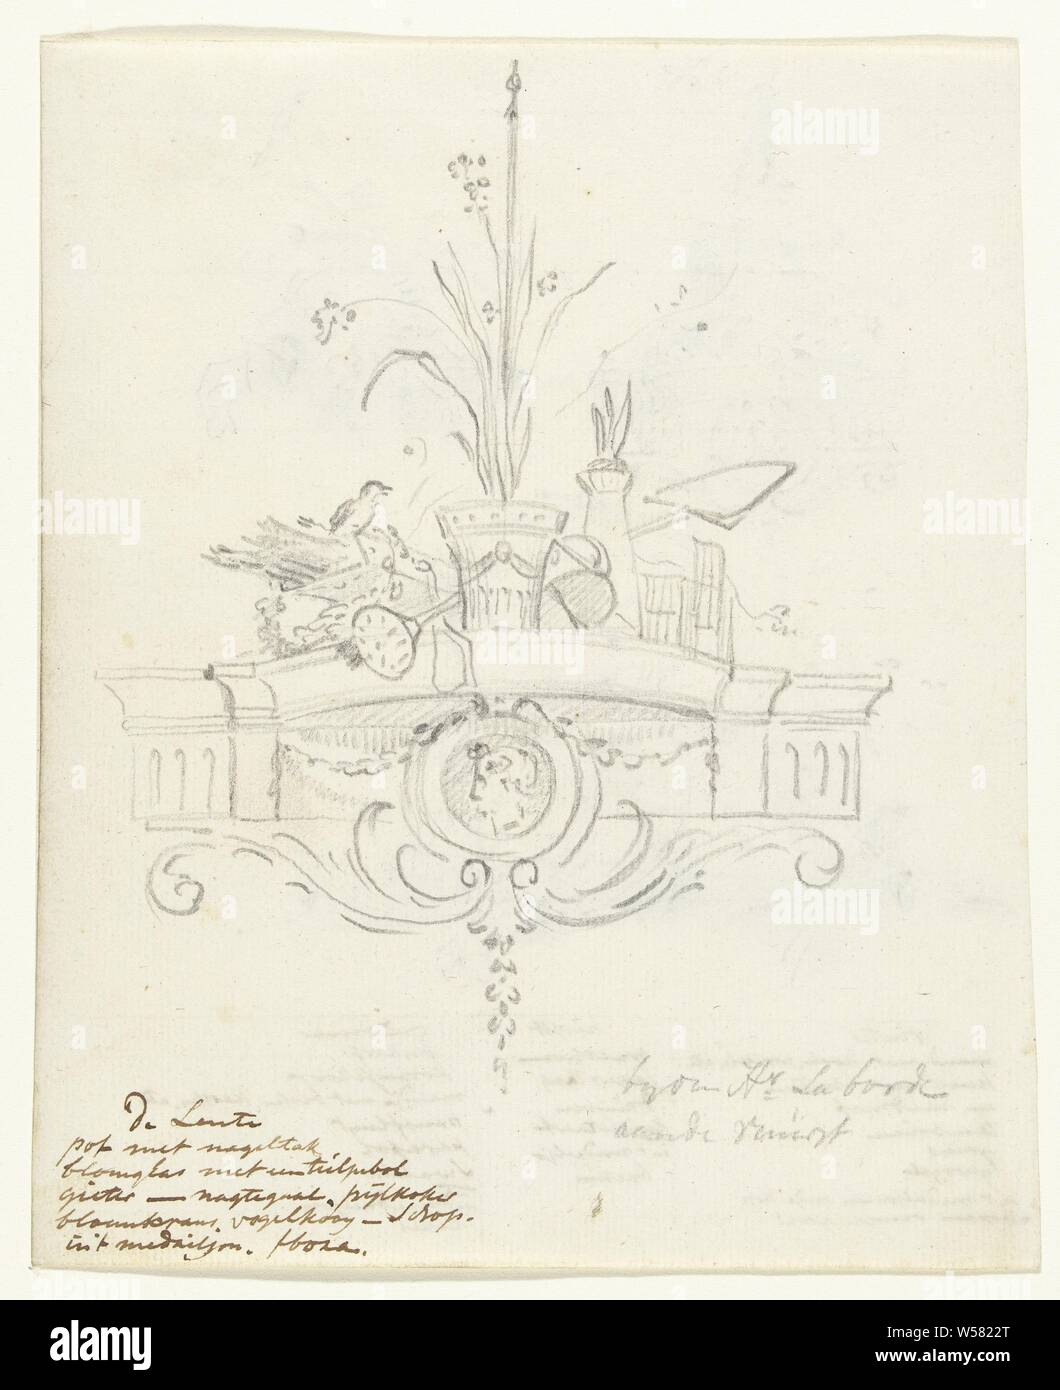 Design per una decorazione murale con allegoria della primavera, Jurriaan Andriessen, c. 1752 - c. 1819, carta di grafite (minerale), h 193 mm × W 158 mm Foto Stock